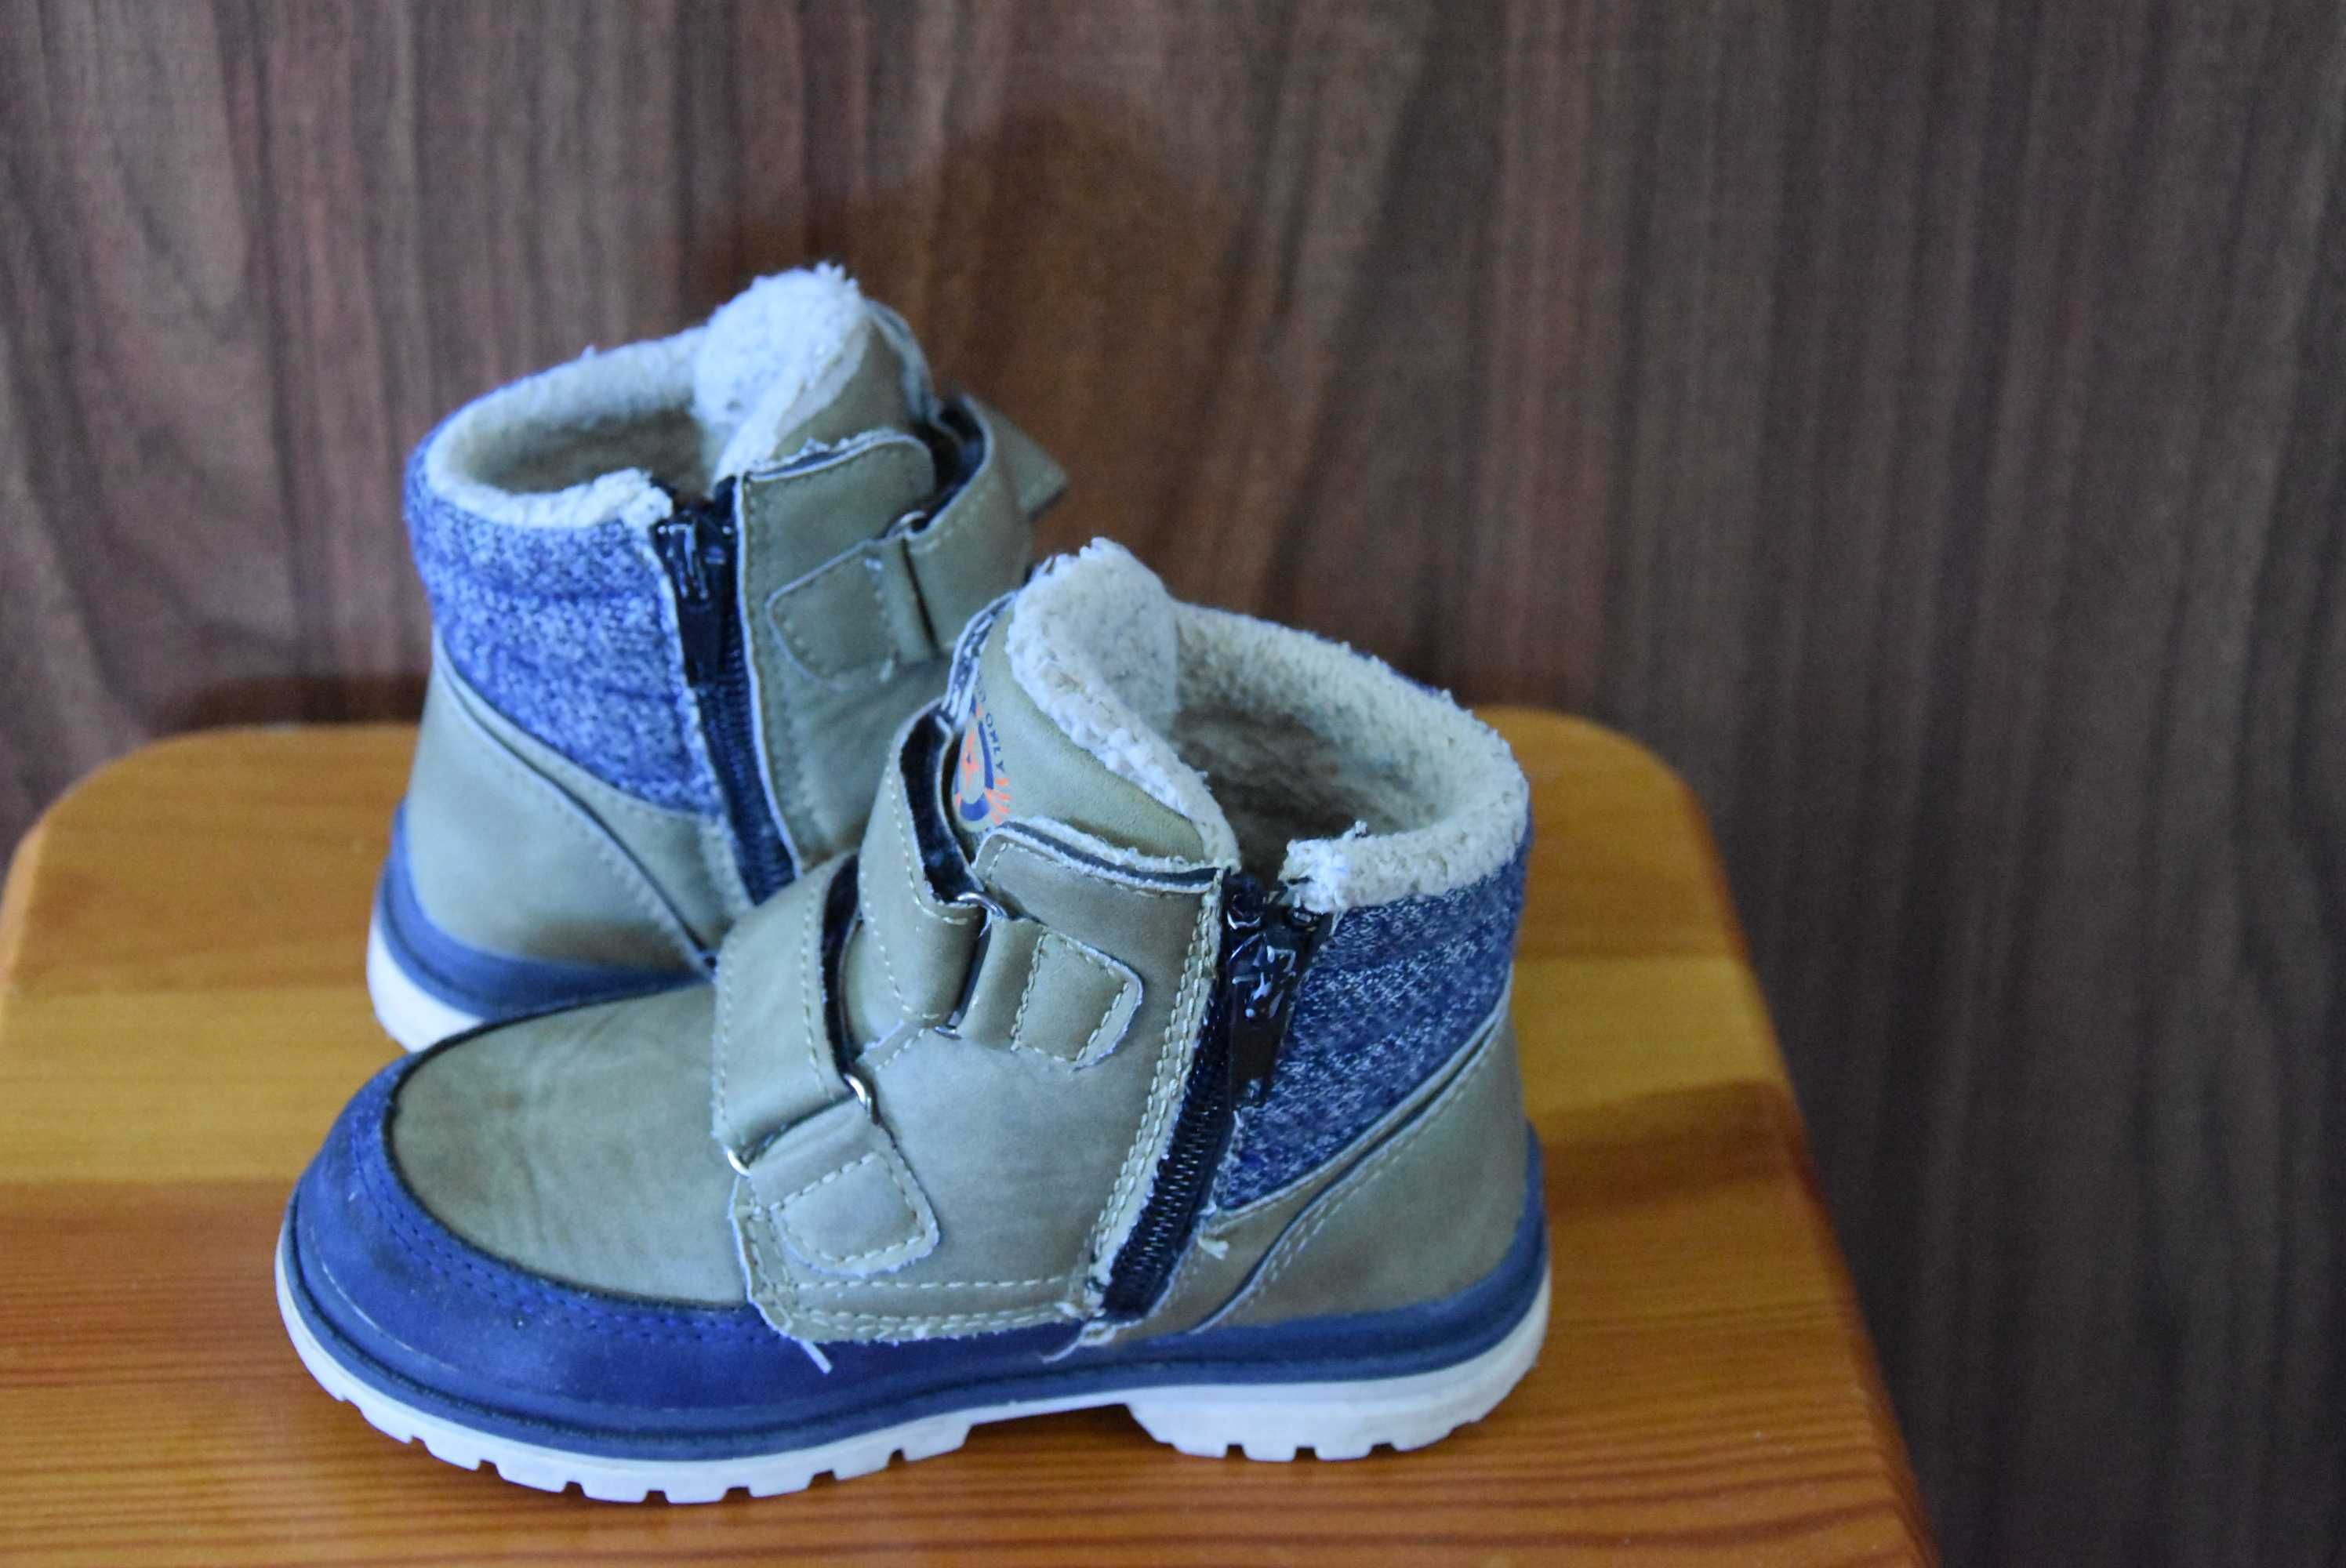 Buty chłopięce zimowe Badoxx r. 25